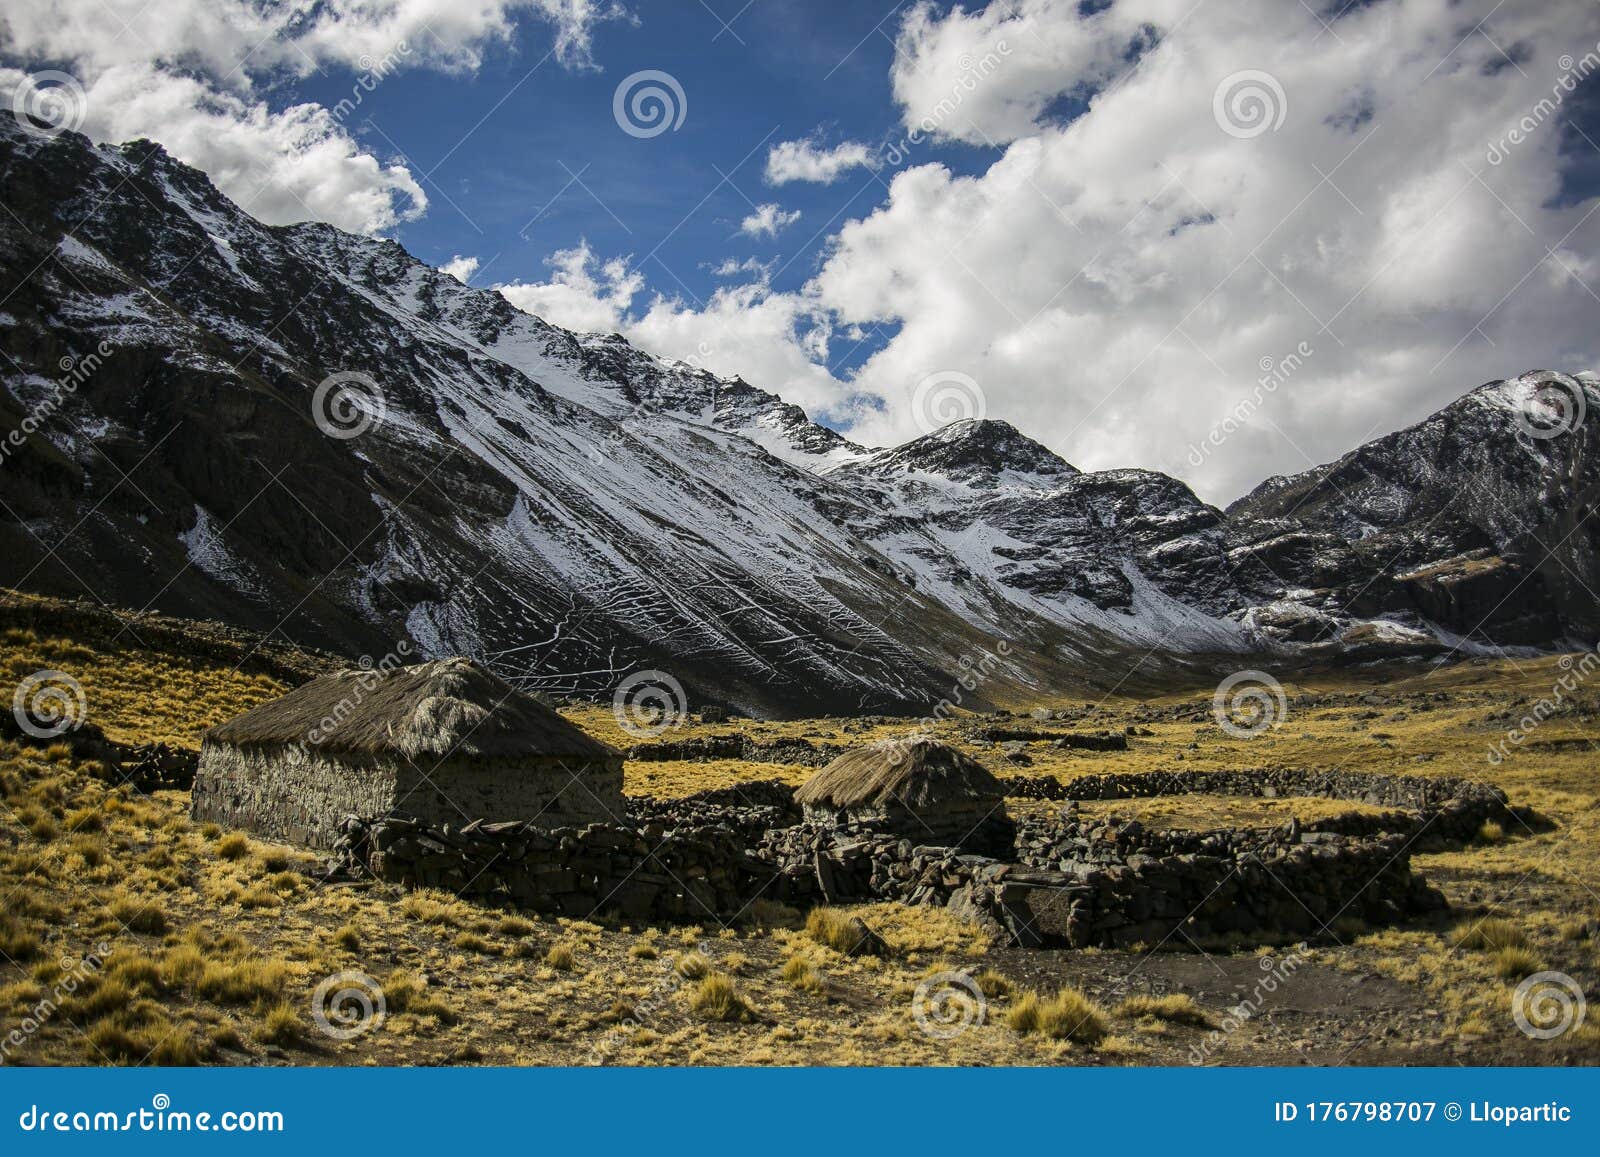 La majestuosa cordillera de Los Andes a través de la fotografía: una mirada  al valle del Mapocho